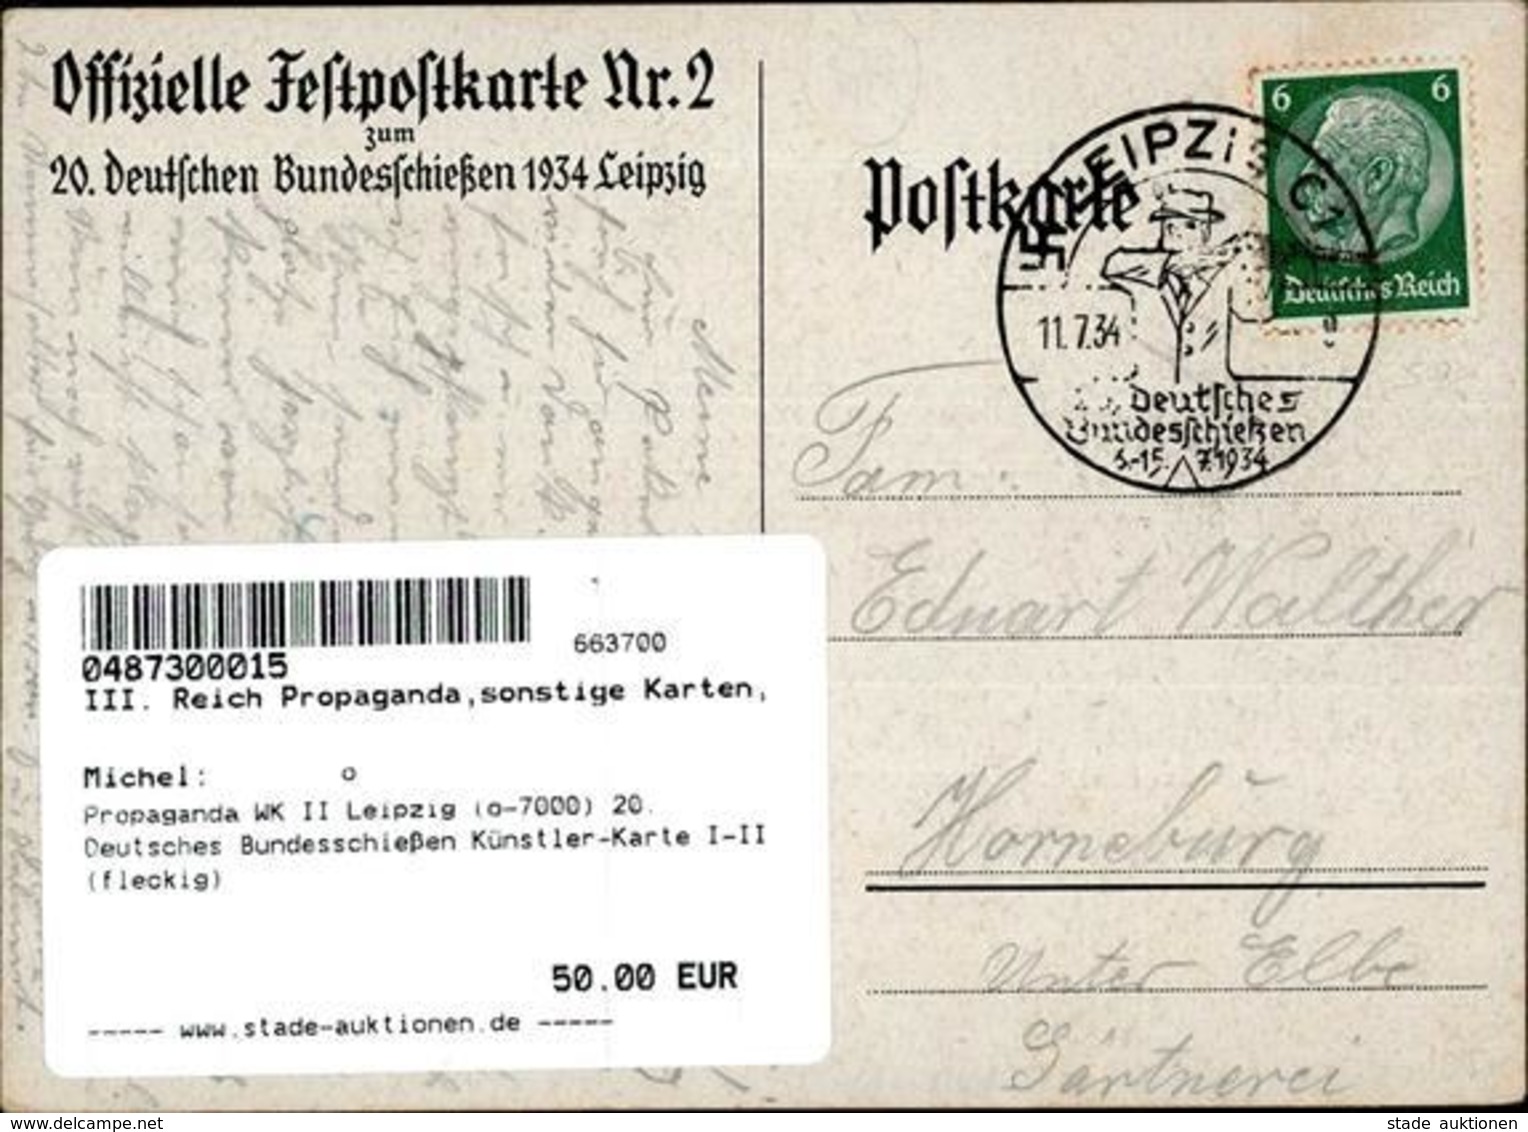 Propaganda WK II Leipzig (o-7000) 20. Deutsches Bundesschießen Künstler-Karte I-II (fleckig) - Weltkrieg 1939-45